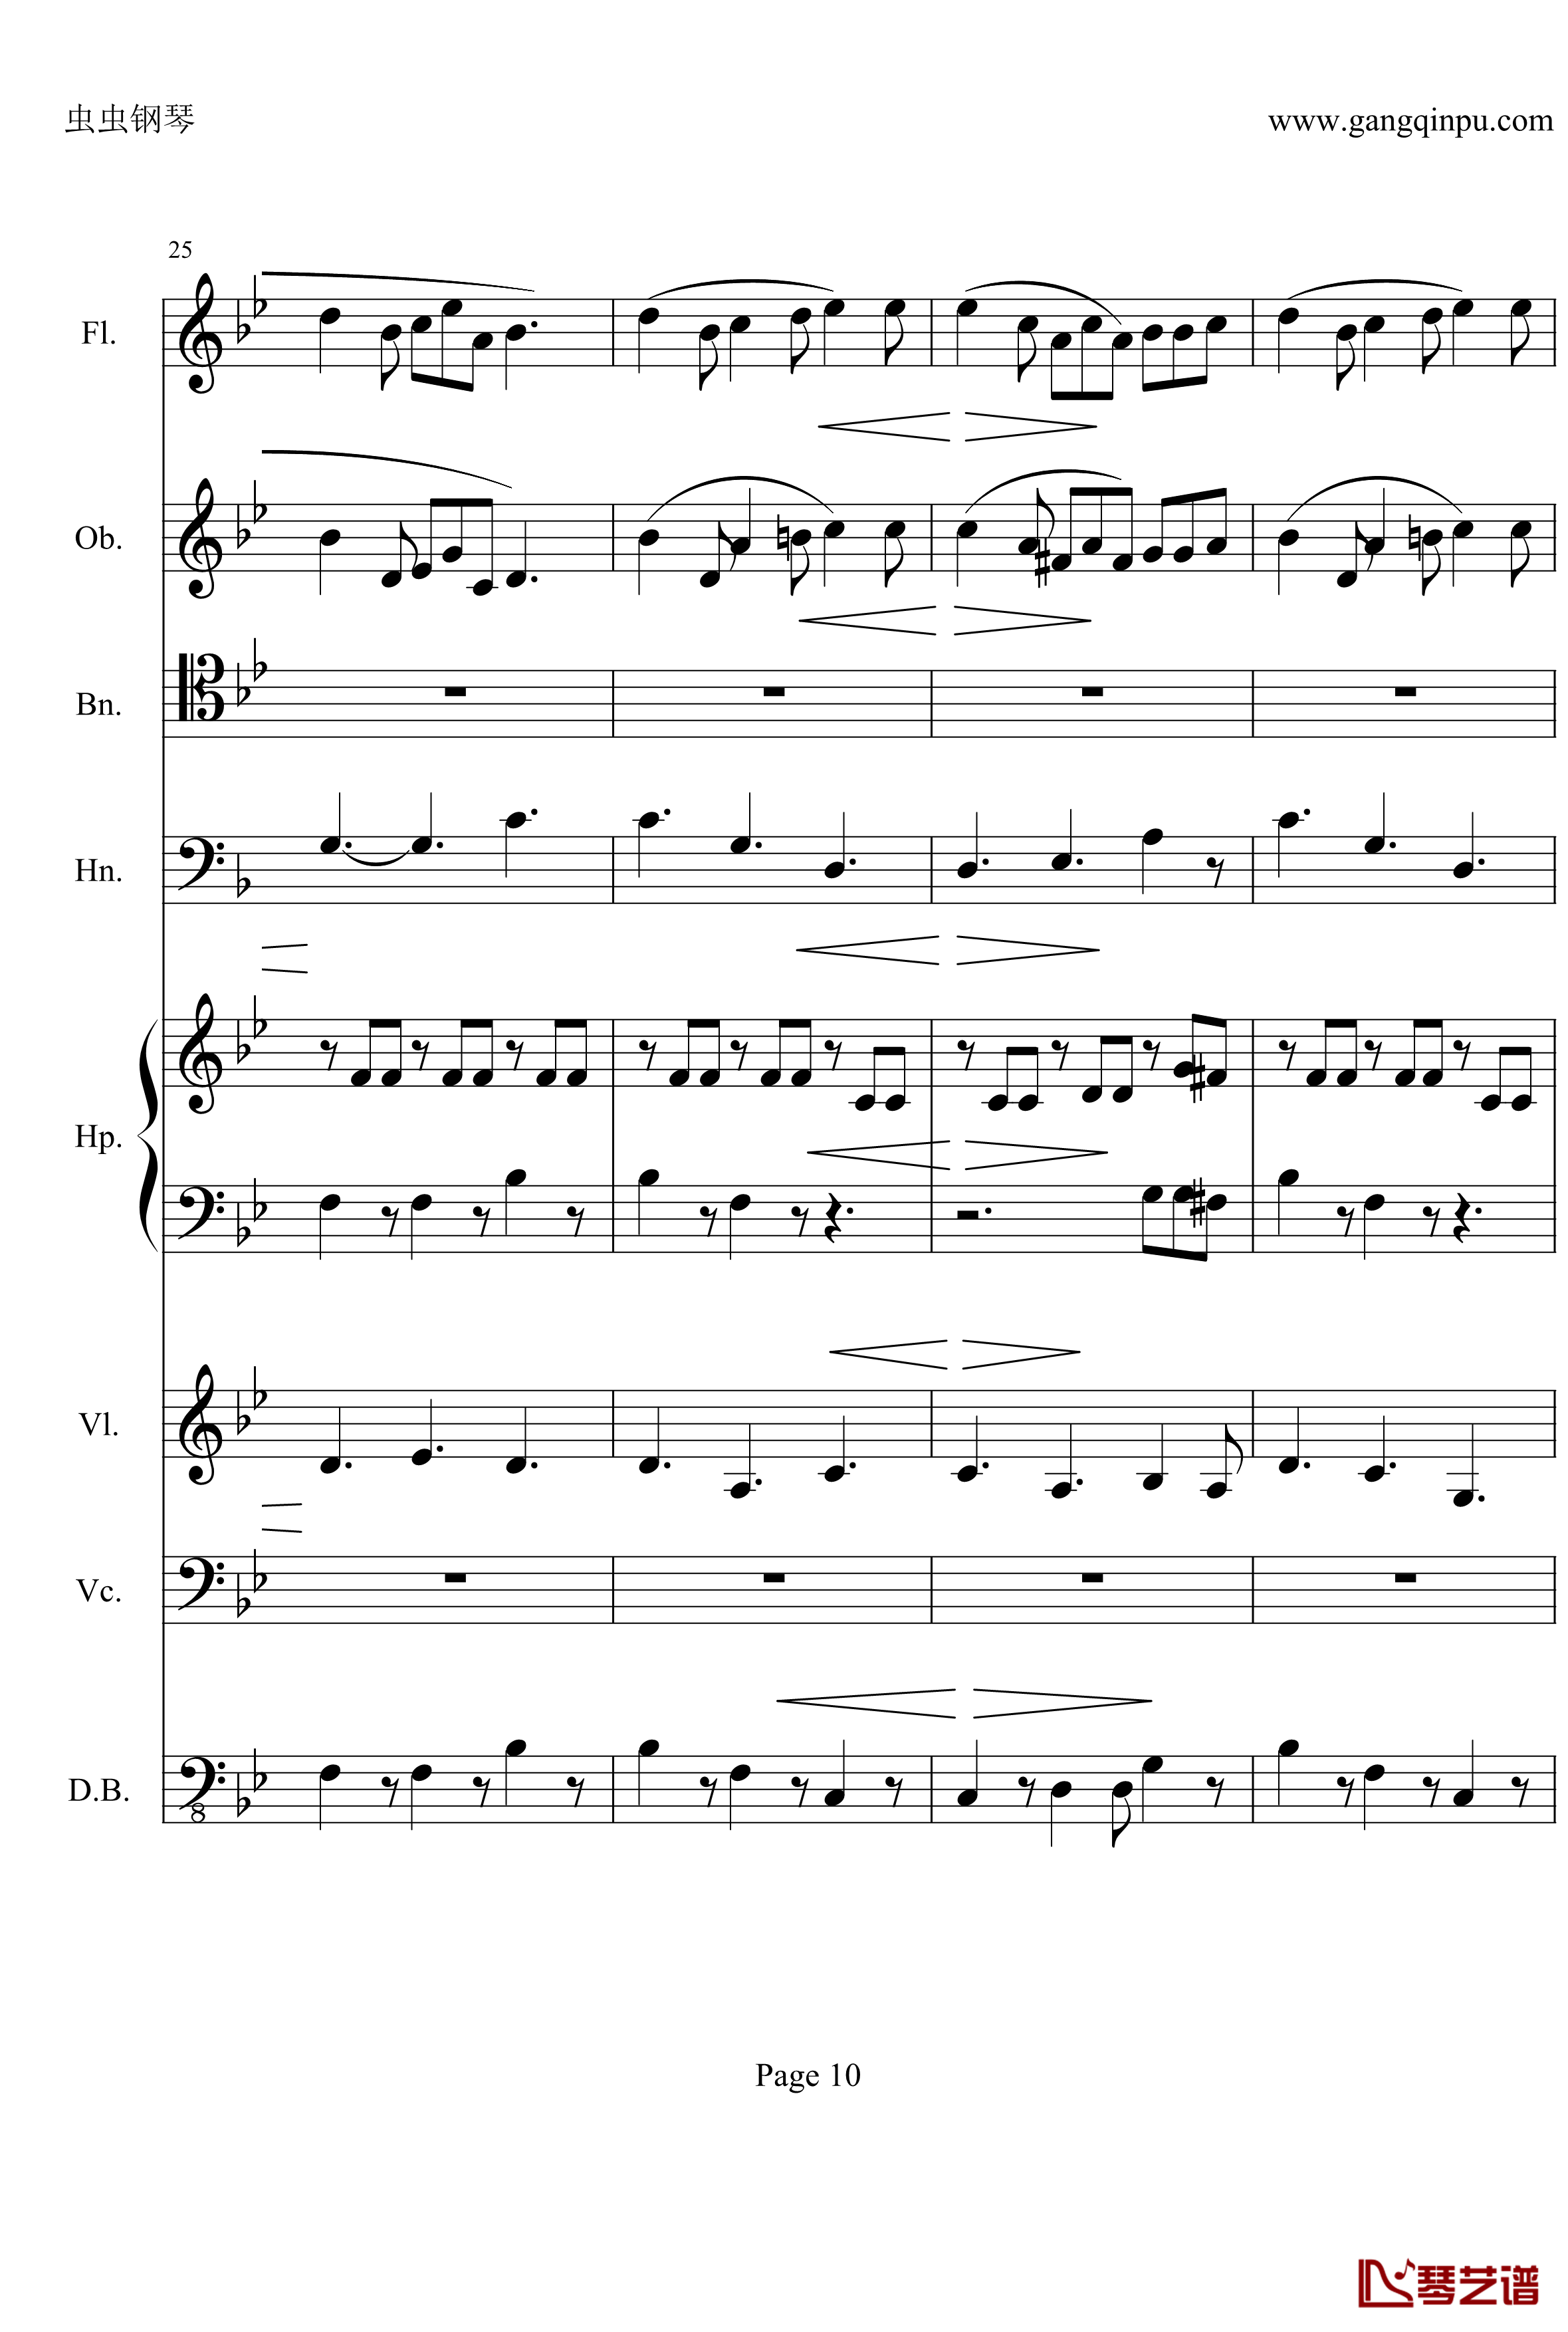 奏鸣曲之交响钢琴谱-第25首-Ⅱ-贝多芬-beethoven10